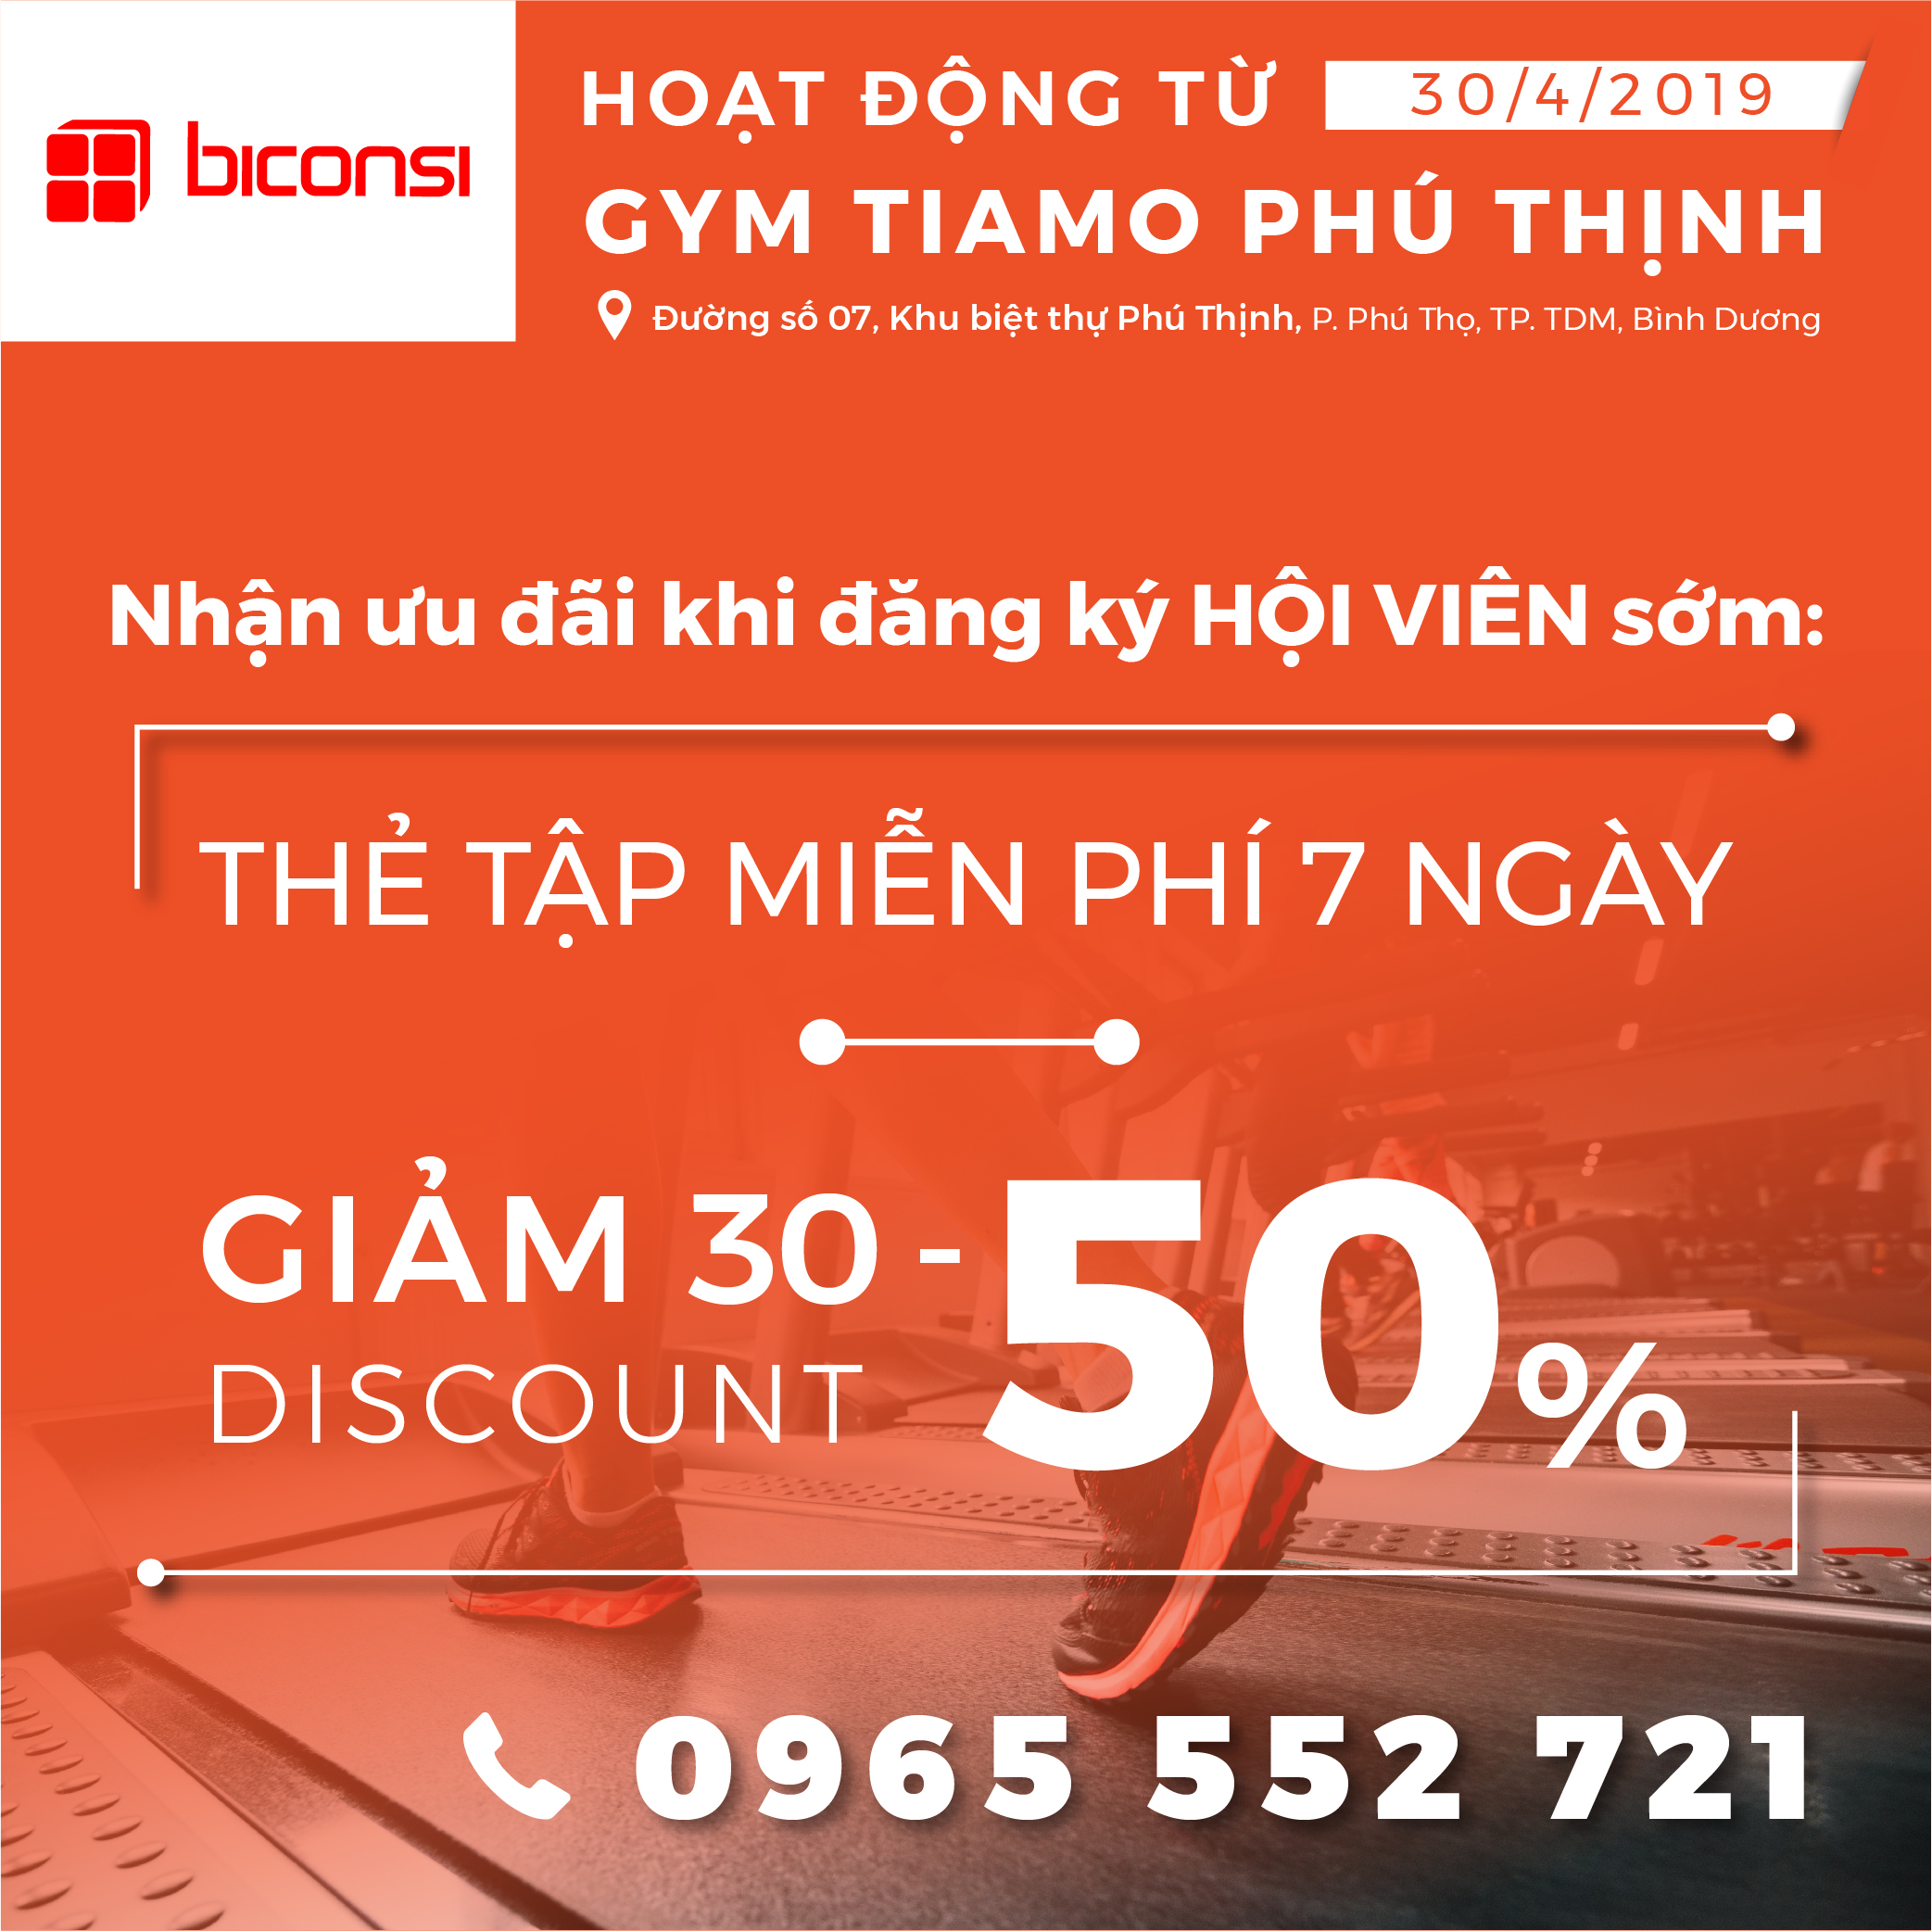 Gym Tiamo Phú Thịnh – Tiện ích cho cư dân Khu Biệt Thự Phú Thịnh